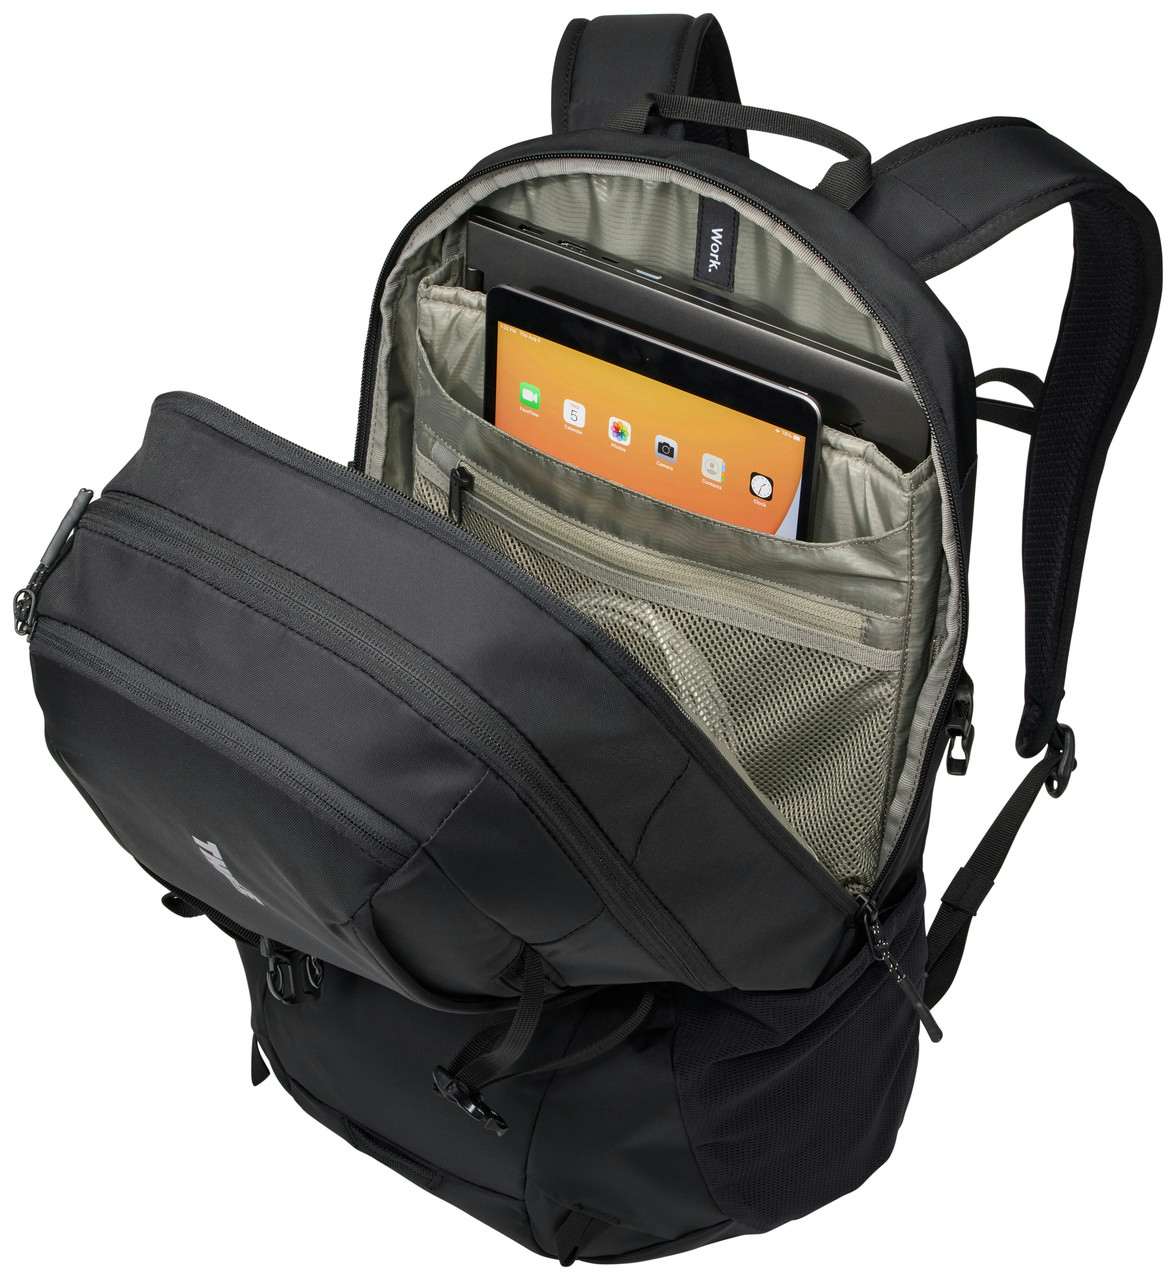 EnRoute 23L 2.0. Backpack Black